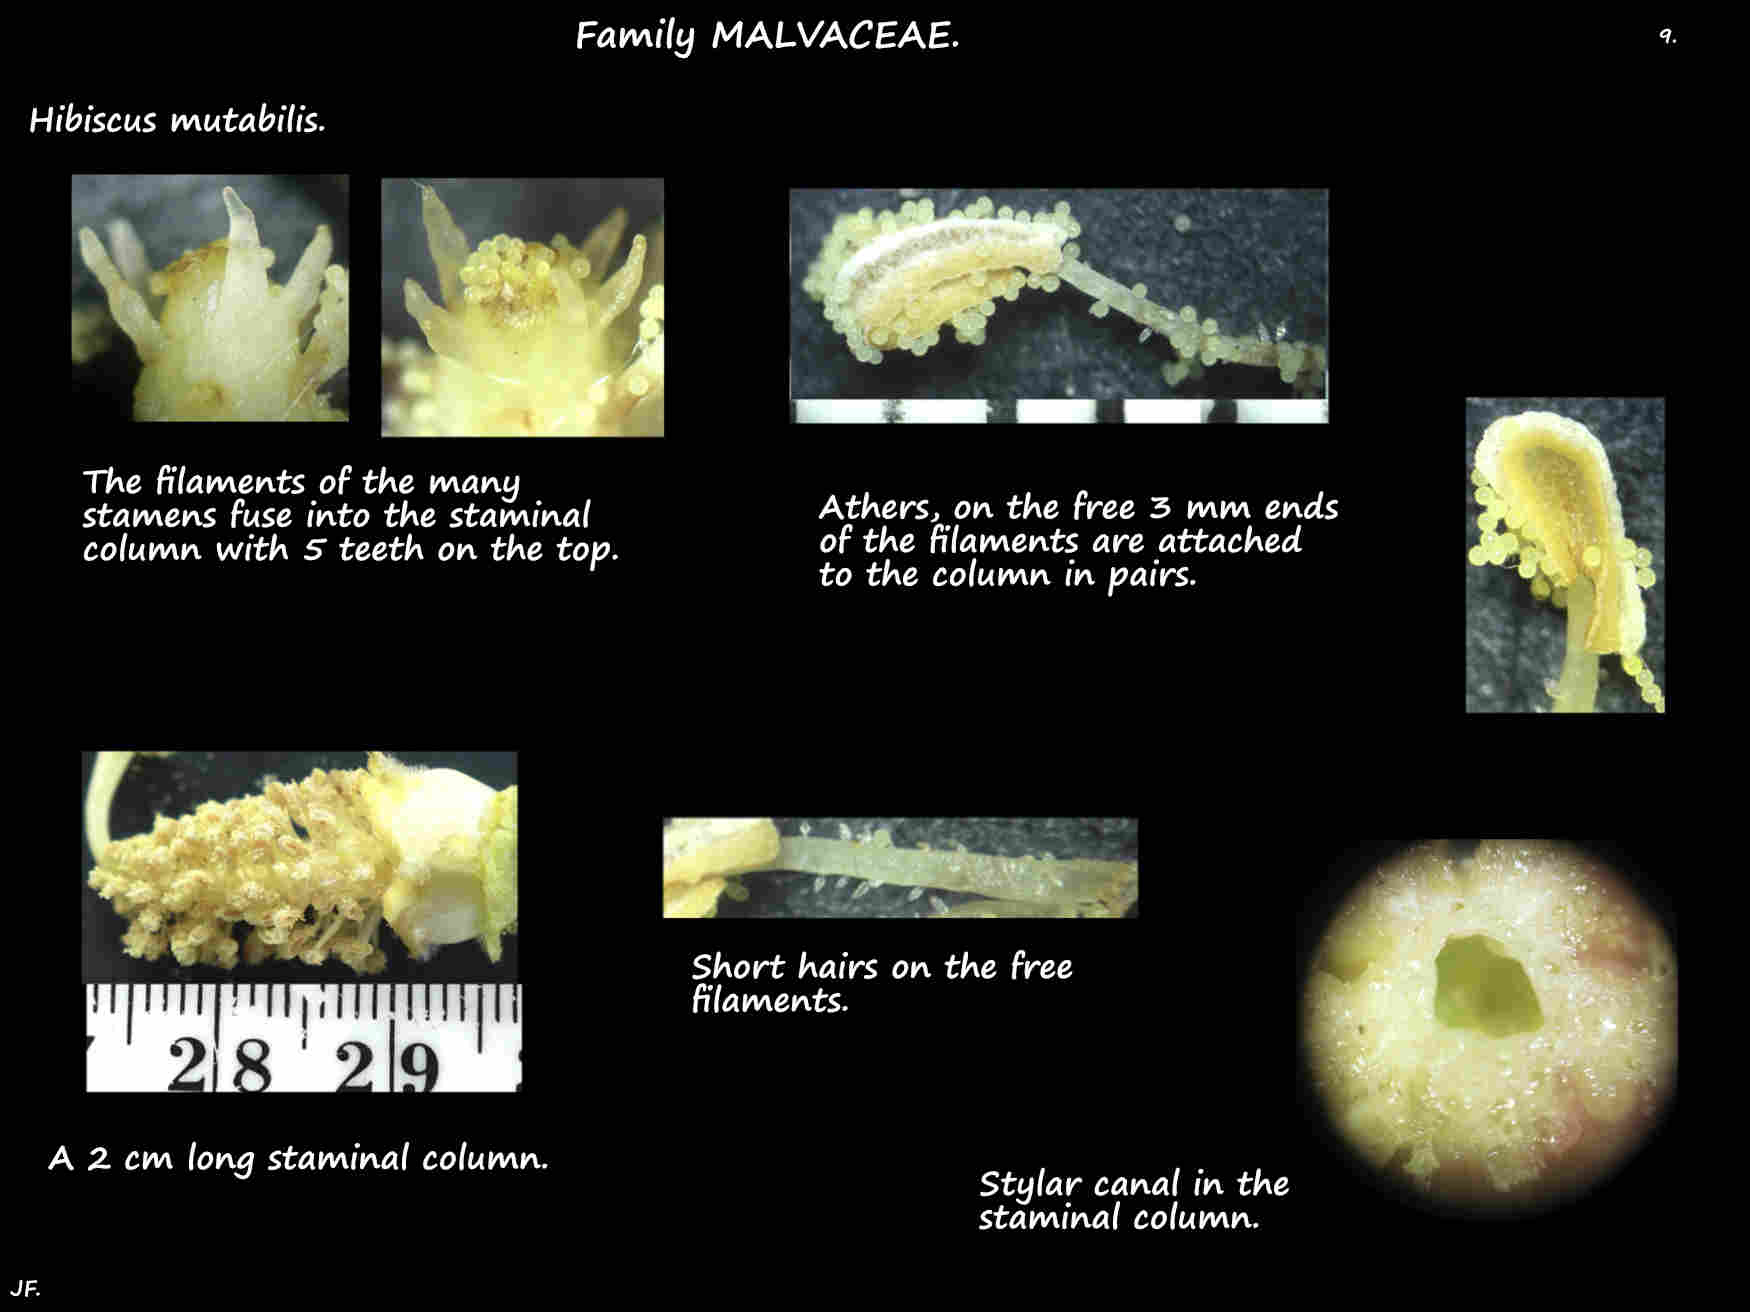 9 Hibiscus mutabilis staminal column